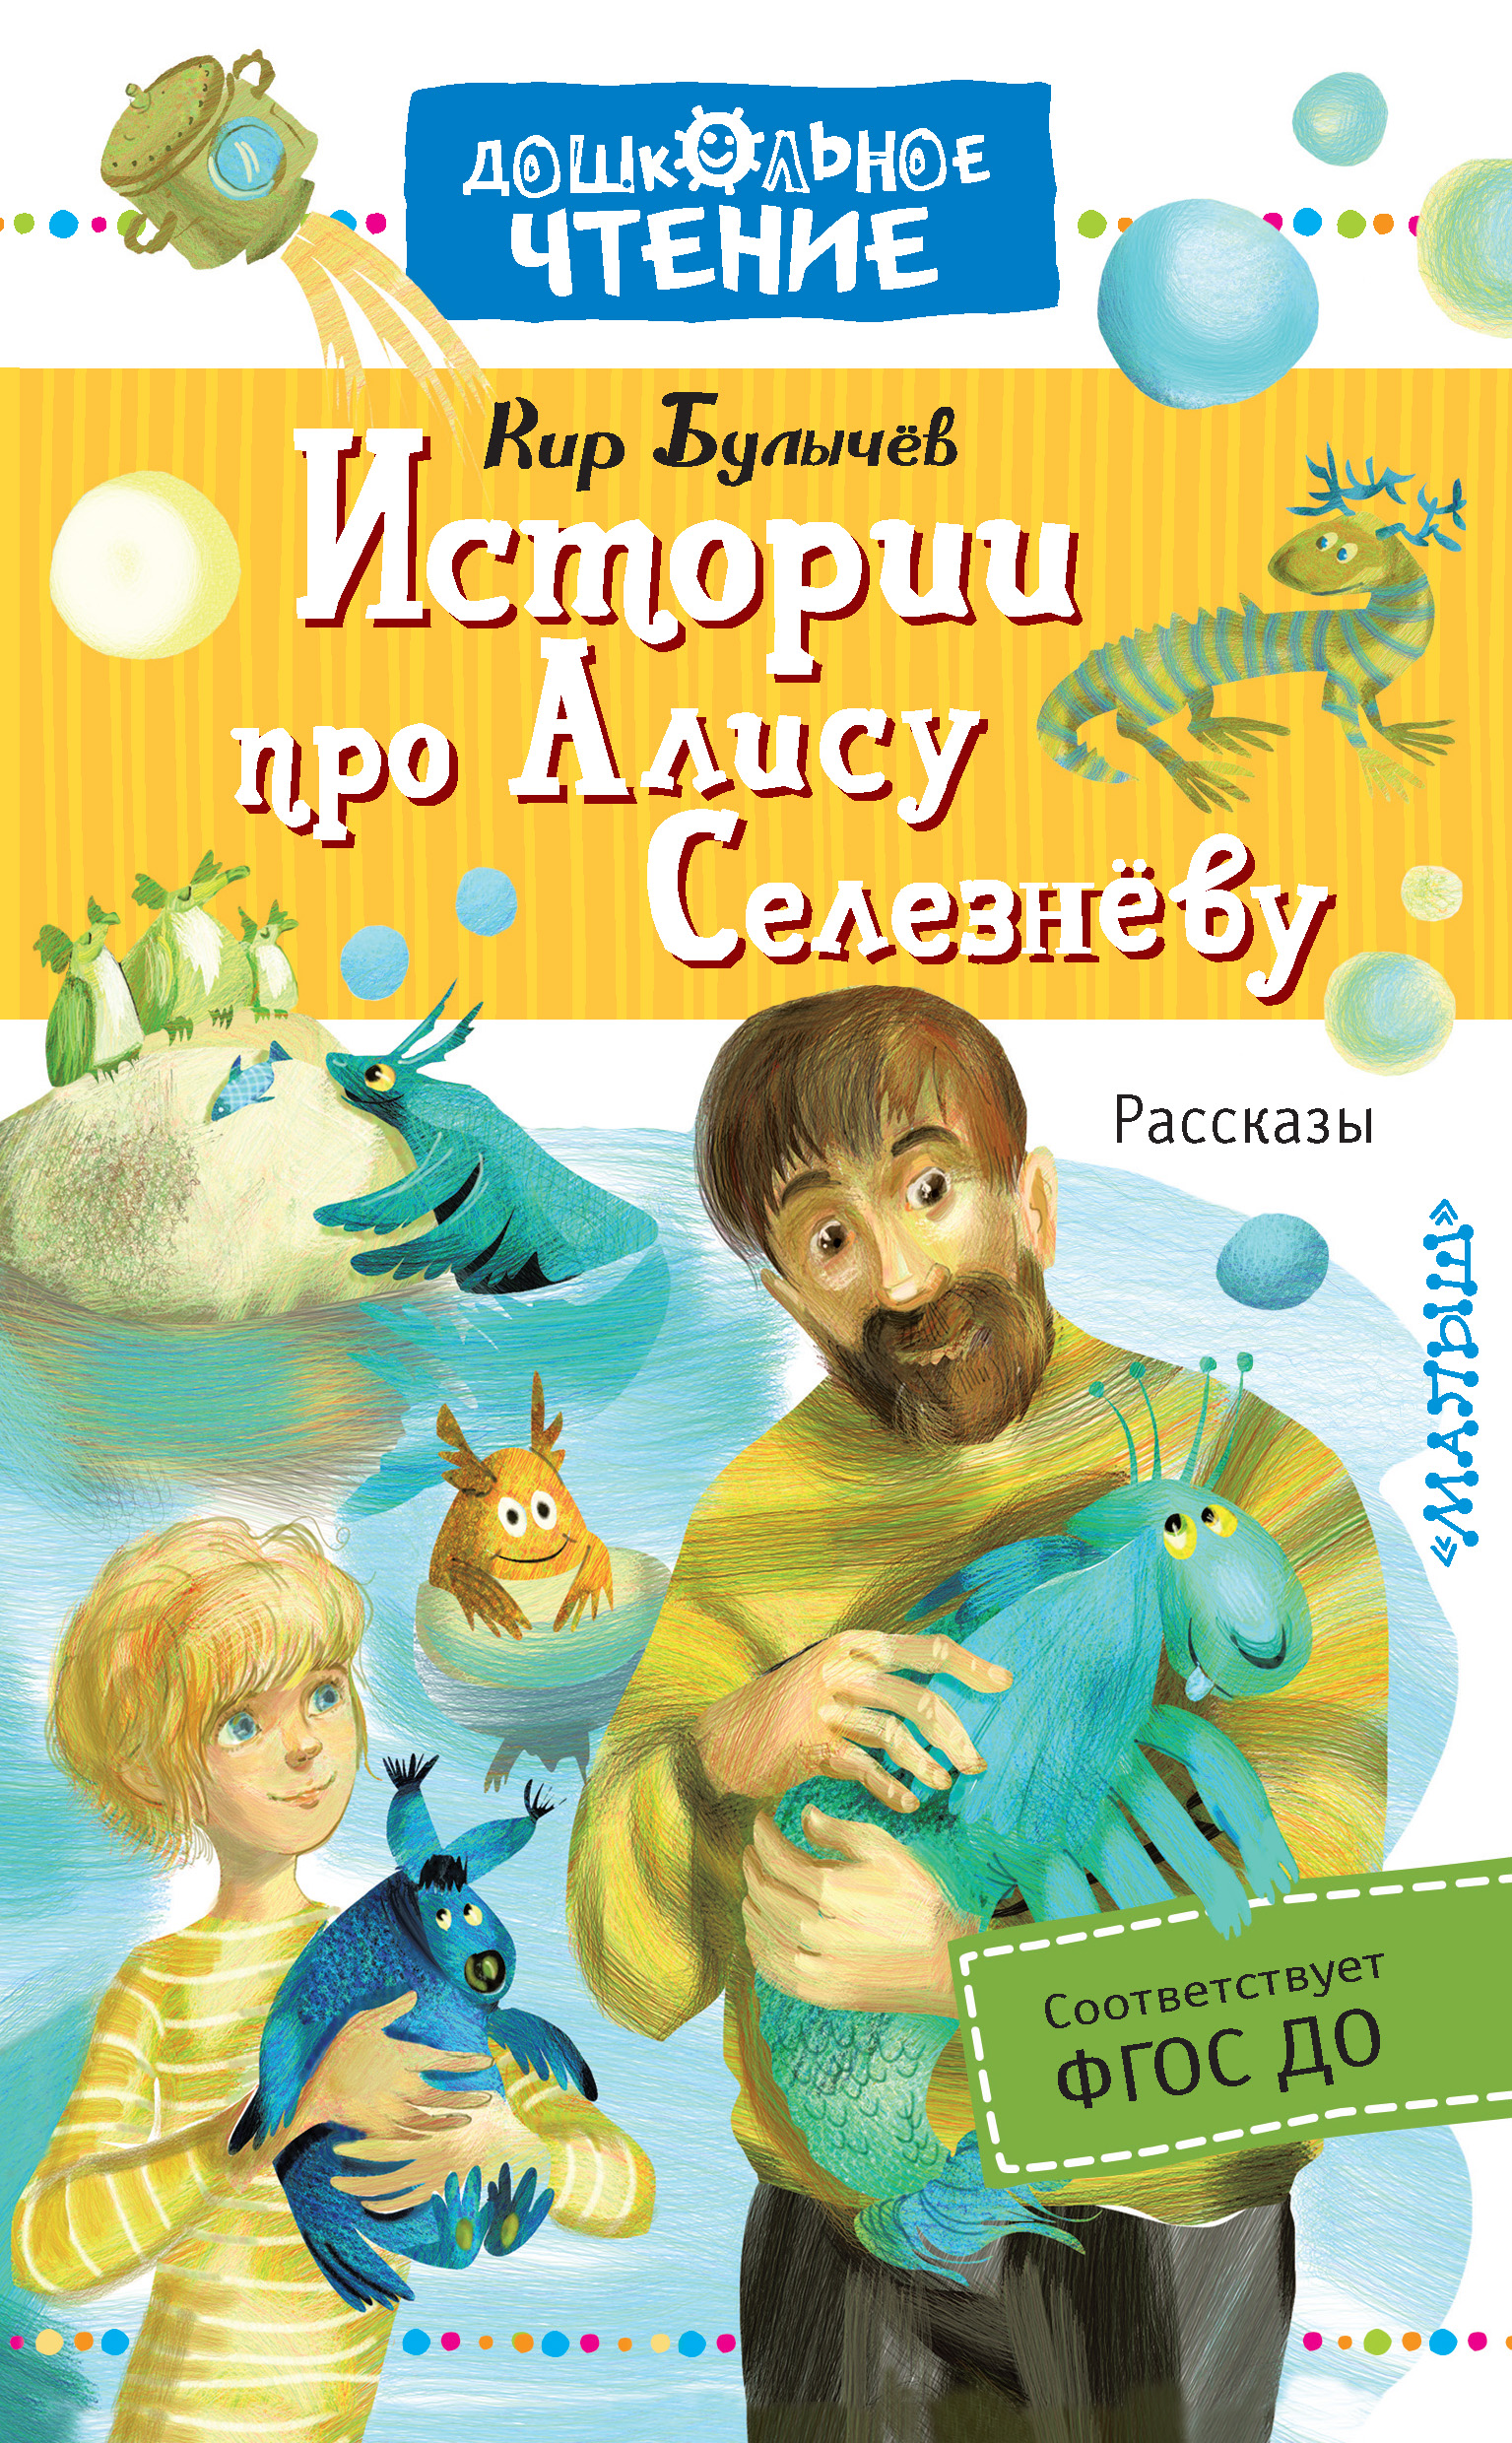 Произведение булычева про алису. Книга прик Алисы. Фантастическая литература для детей.